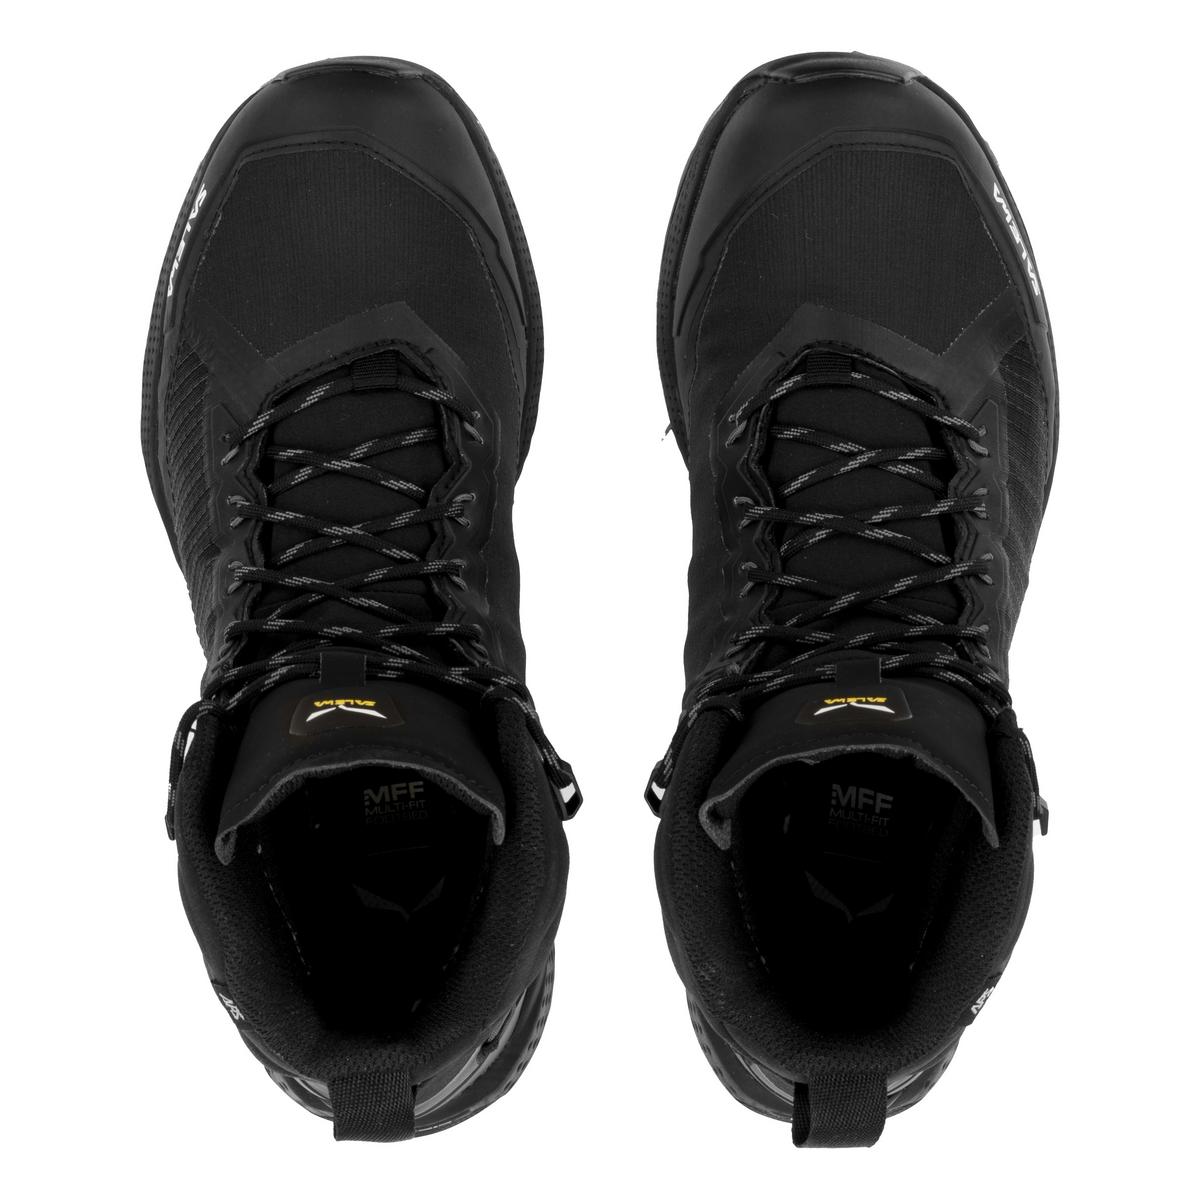 Salewa Men's Pedroc Pro PowerTex Mid Boot - Black